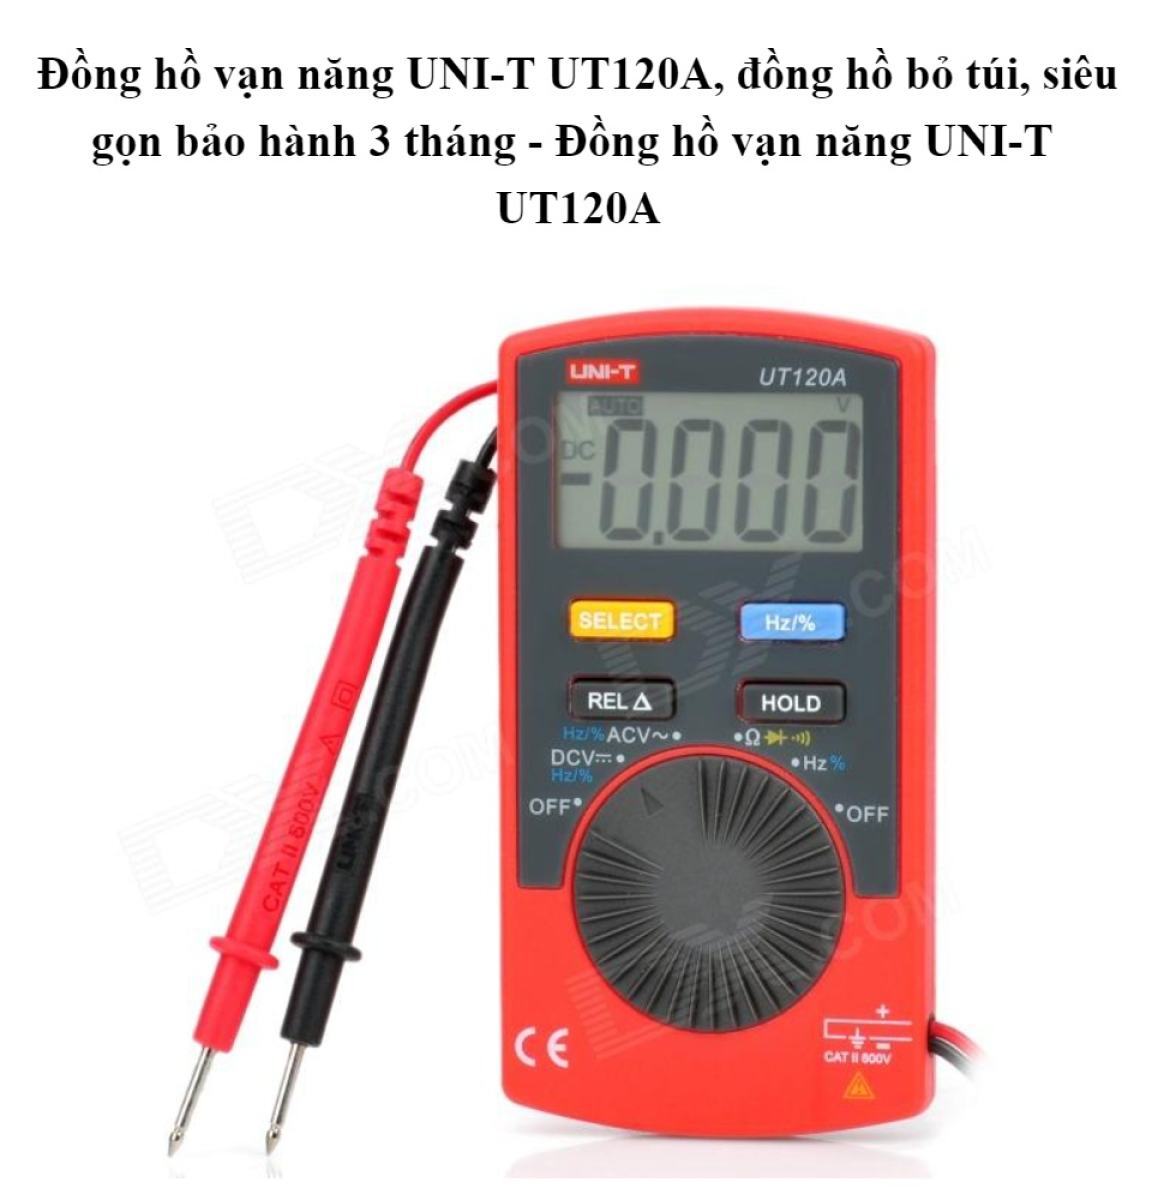 Đồng hồ vạn năng UNI-T UT120A